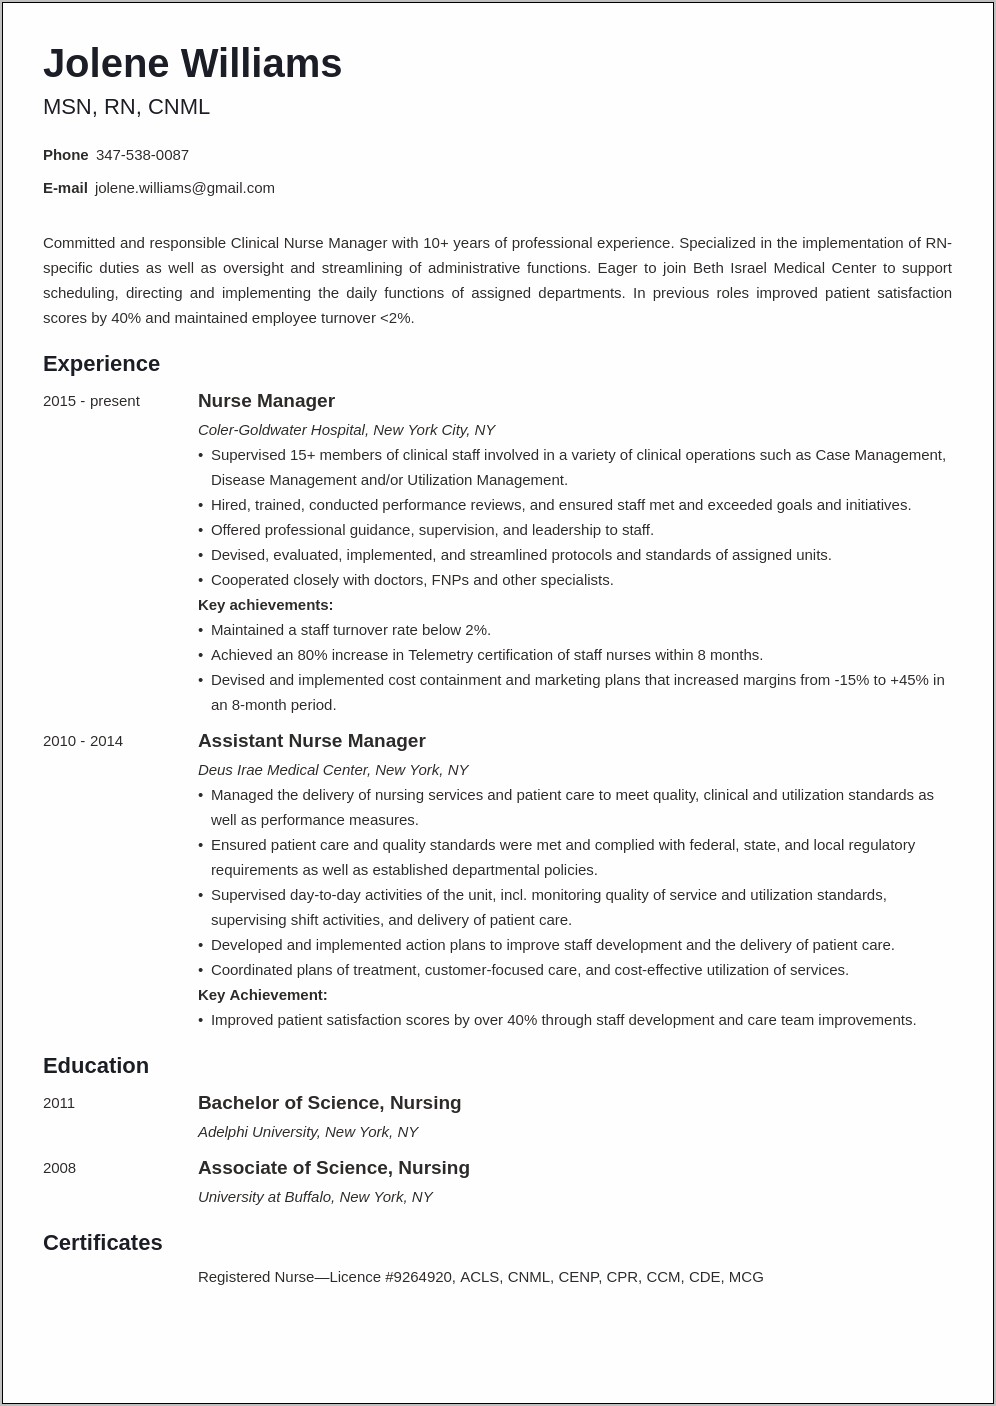 Sample Professional Summary On Resume For Nurse